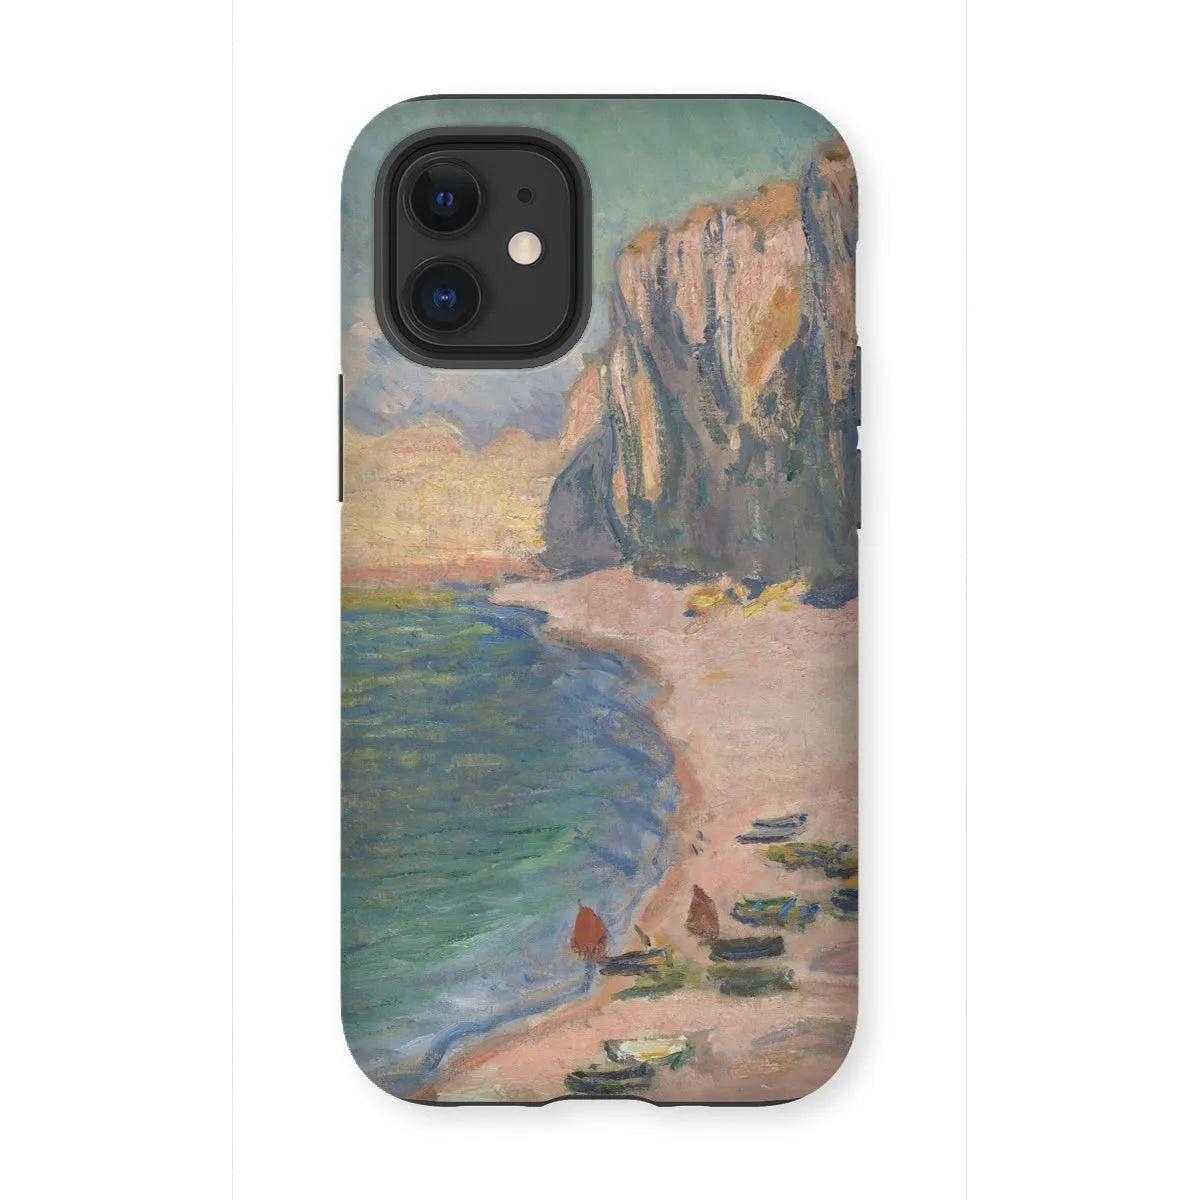 étretat - Impressionist Art Phone Case - Claude Monet - Iphone 12 Mini / Matte - Mobile Phone Cases - Aesthetic Art